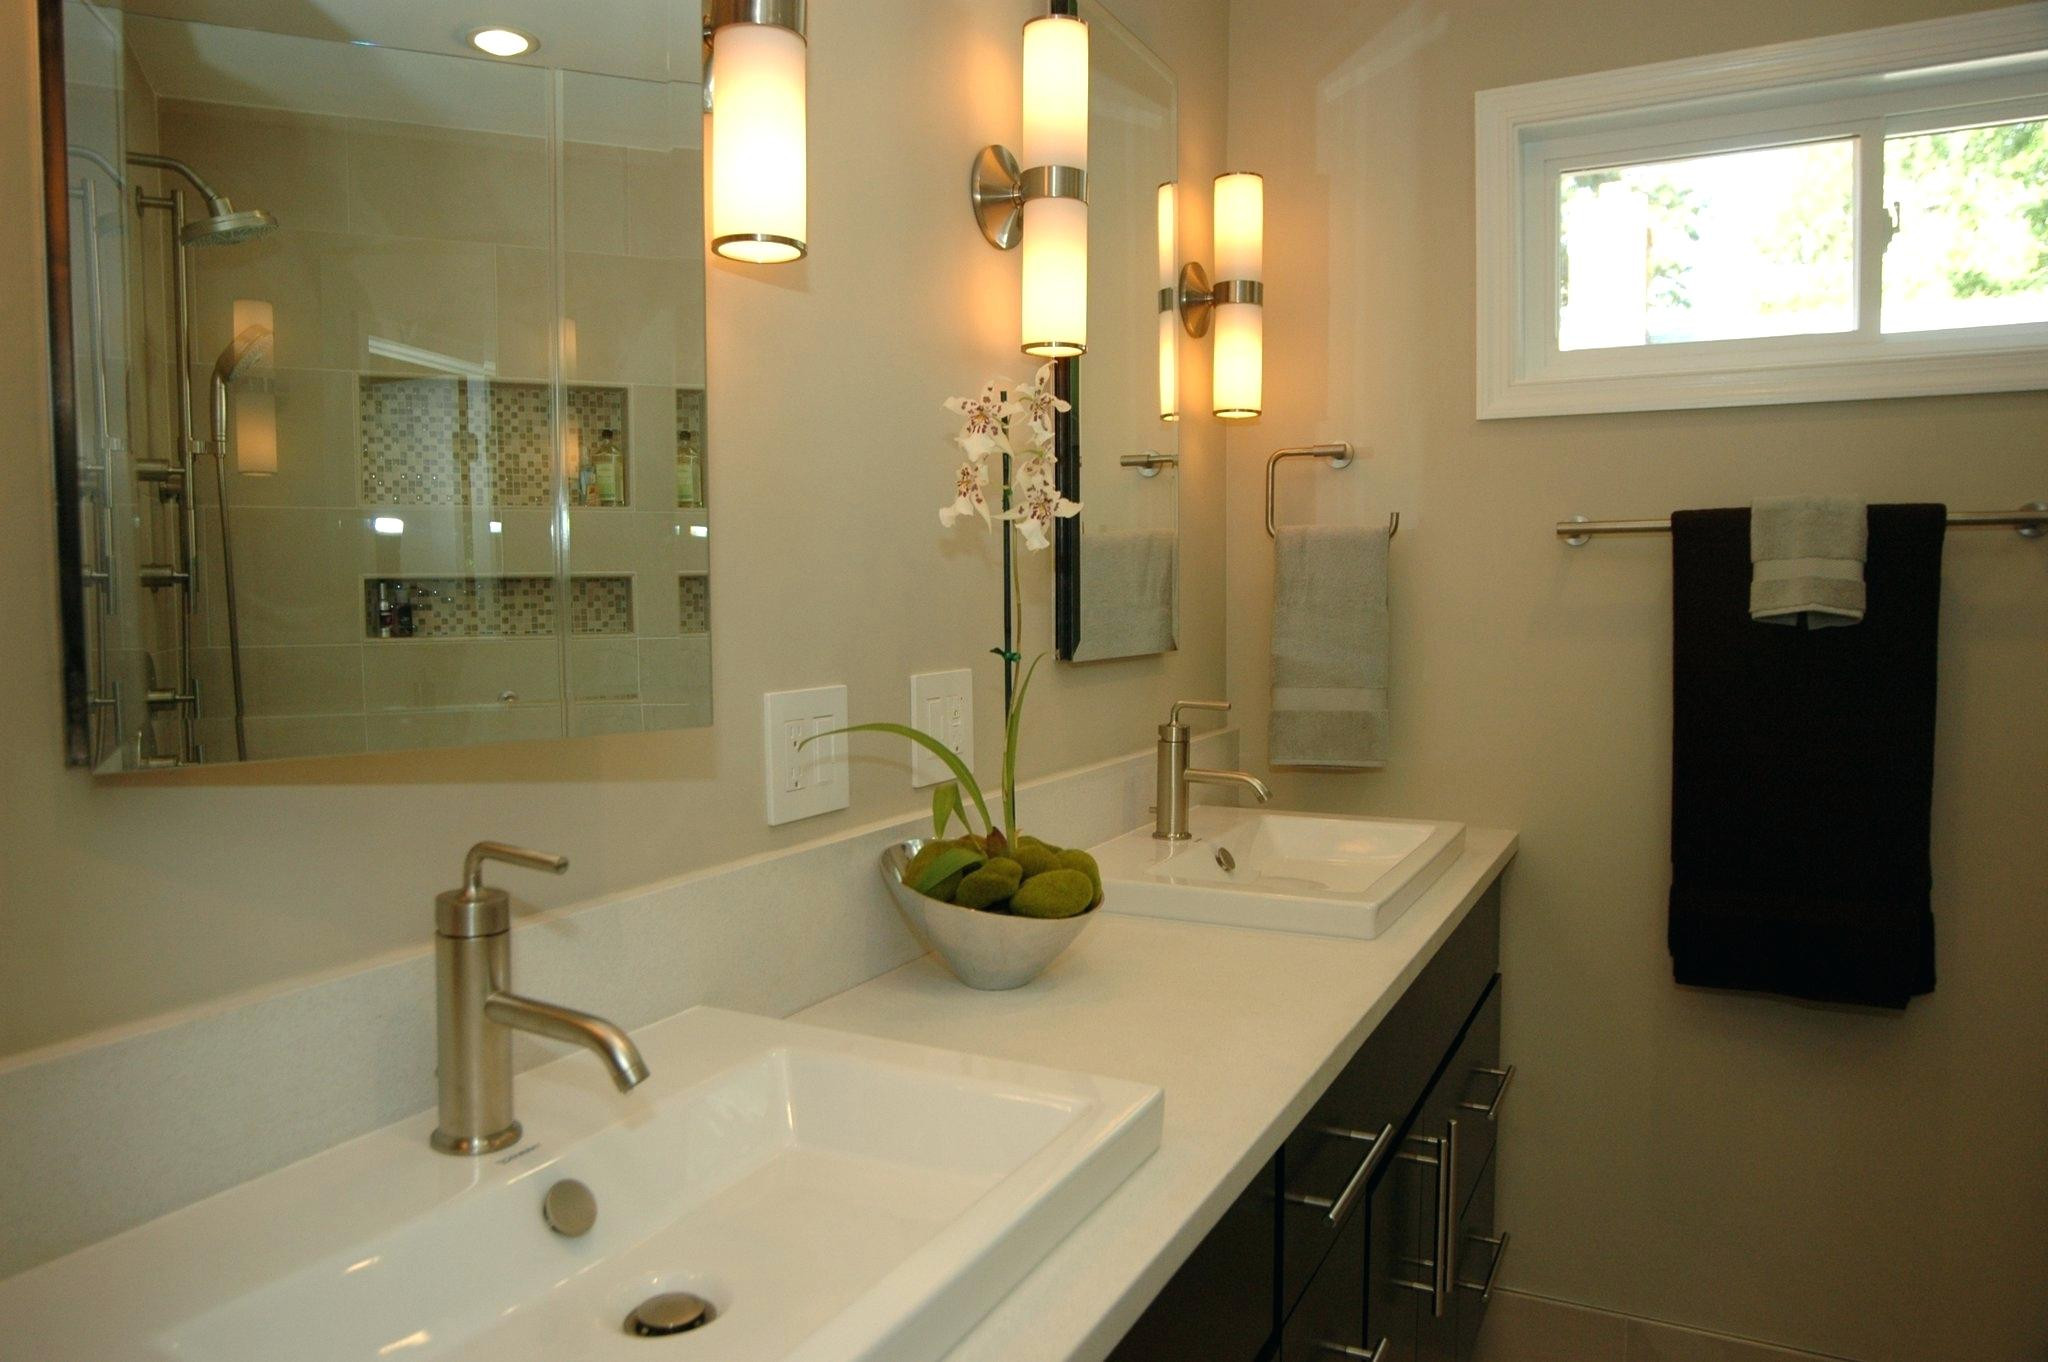 Lowes Bathroom Light Fixtures
 20 Best Bathroom Lighting Ideas